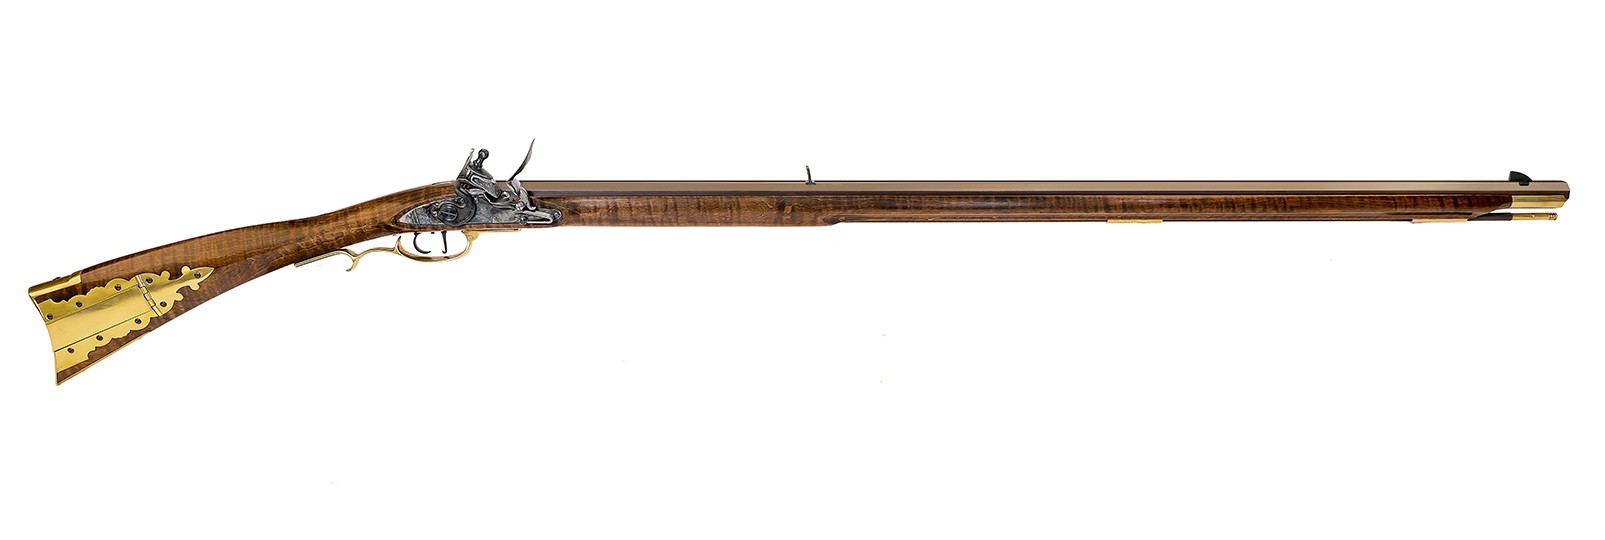 Frontier "Maple" DELUXE Rifle flintlock model